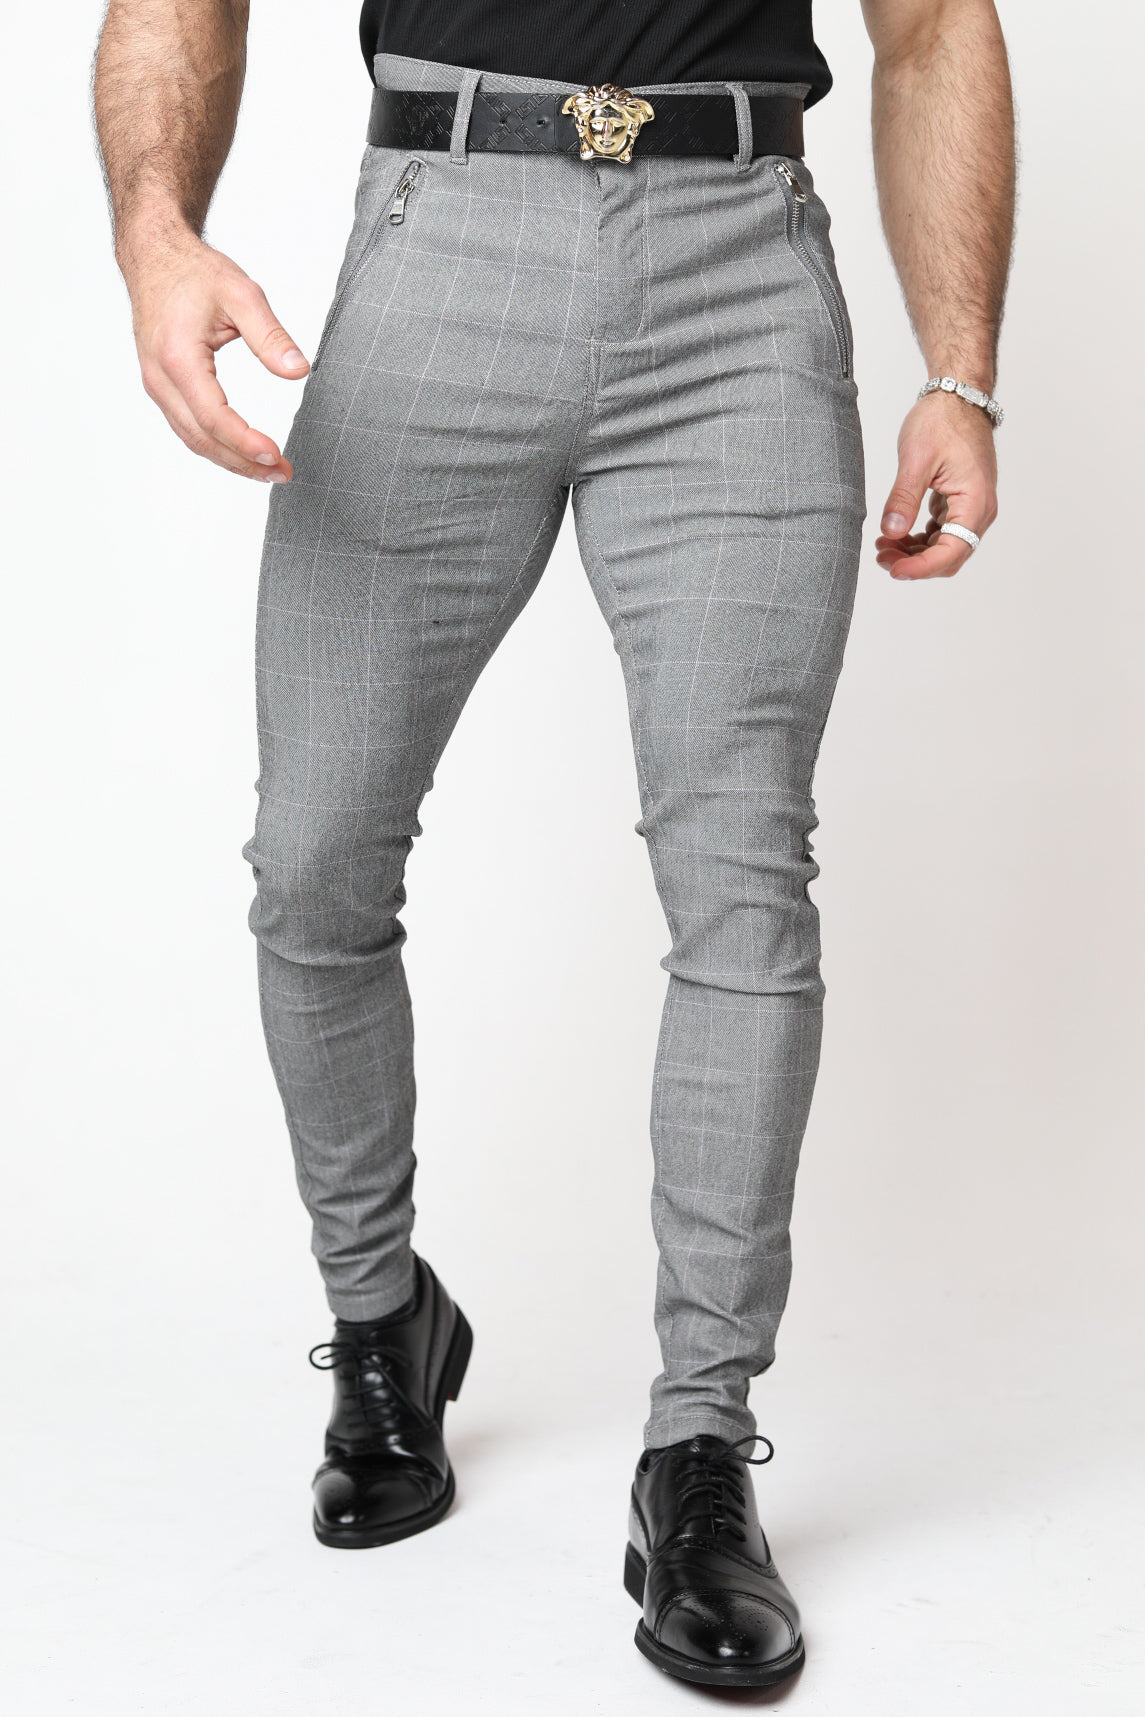 Inspire Premium Light Grey Slim Fit Formal Trouser for Men